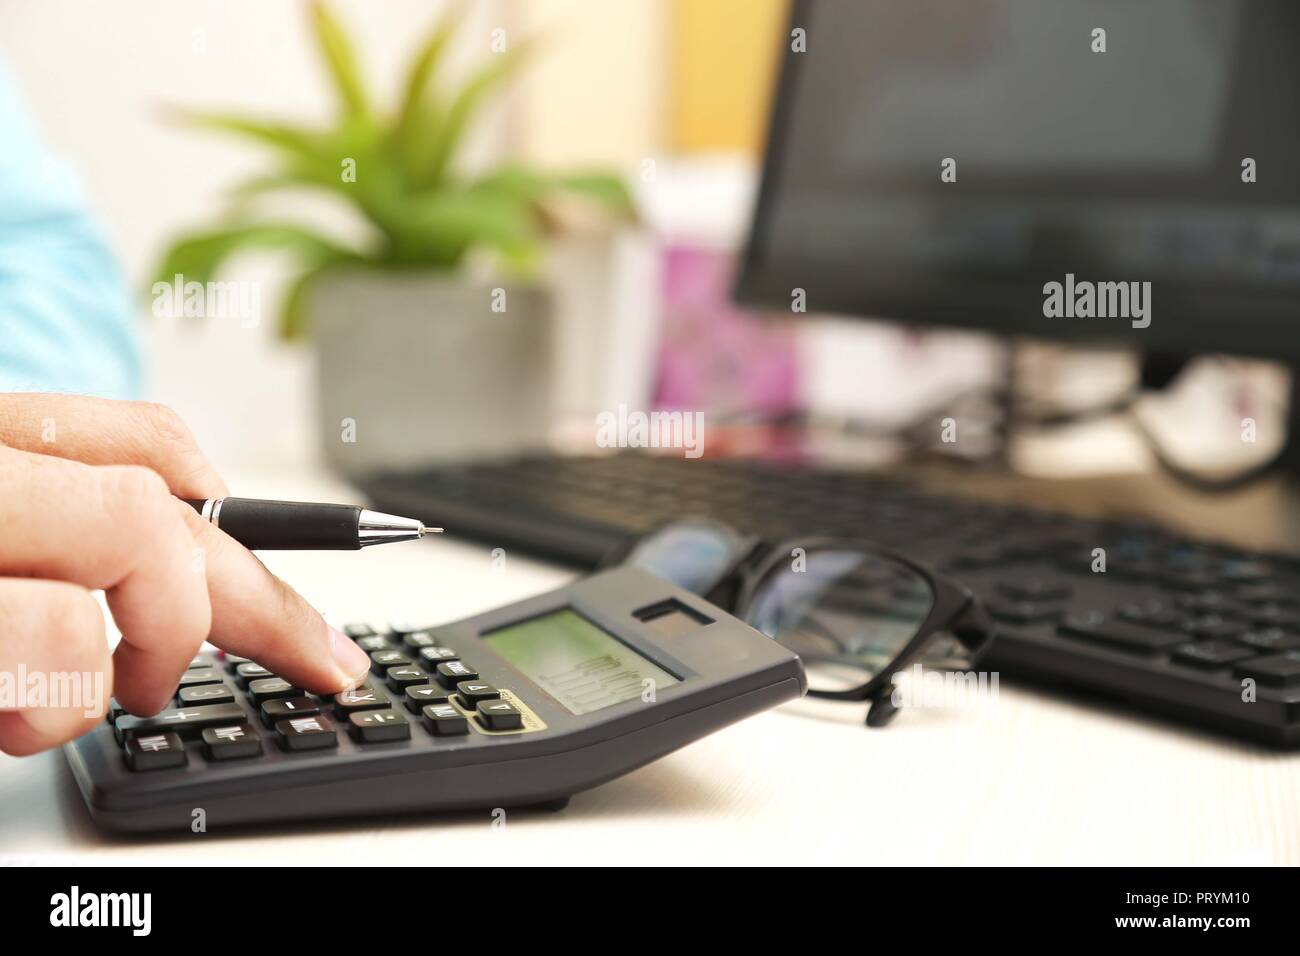 L uomo è utilizzando la calcolatrice con penna in mano. Immagine del  computer, tastiera vaso di fiori e i bicchieri sul tavolo Foto stock - Alamy